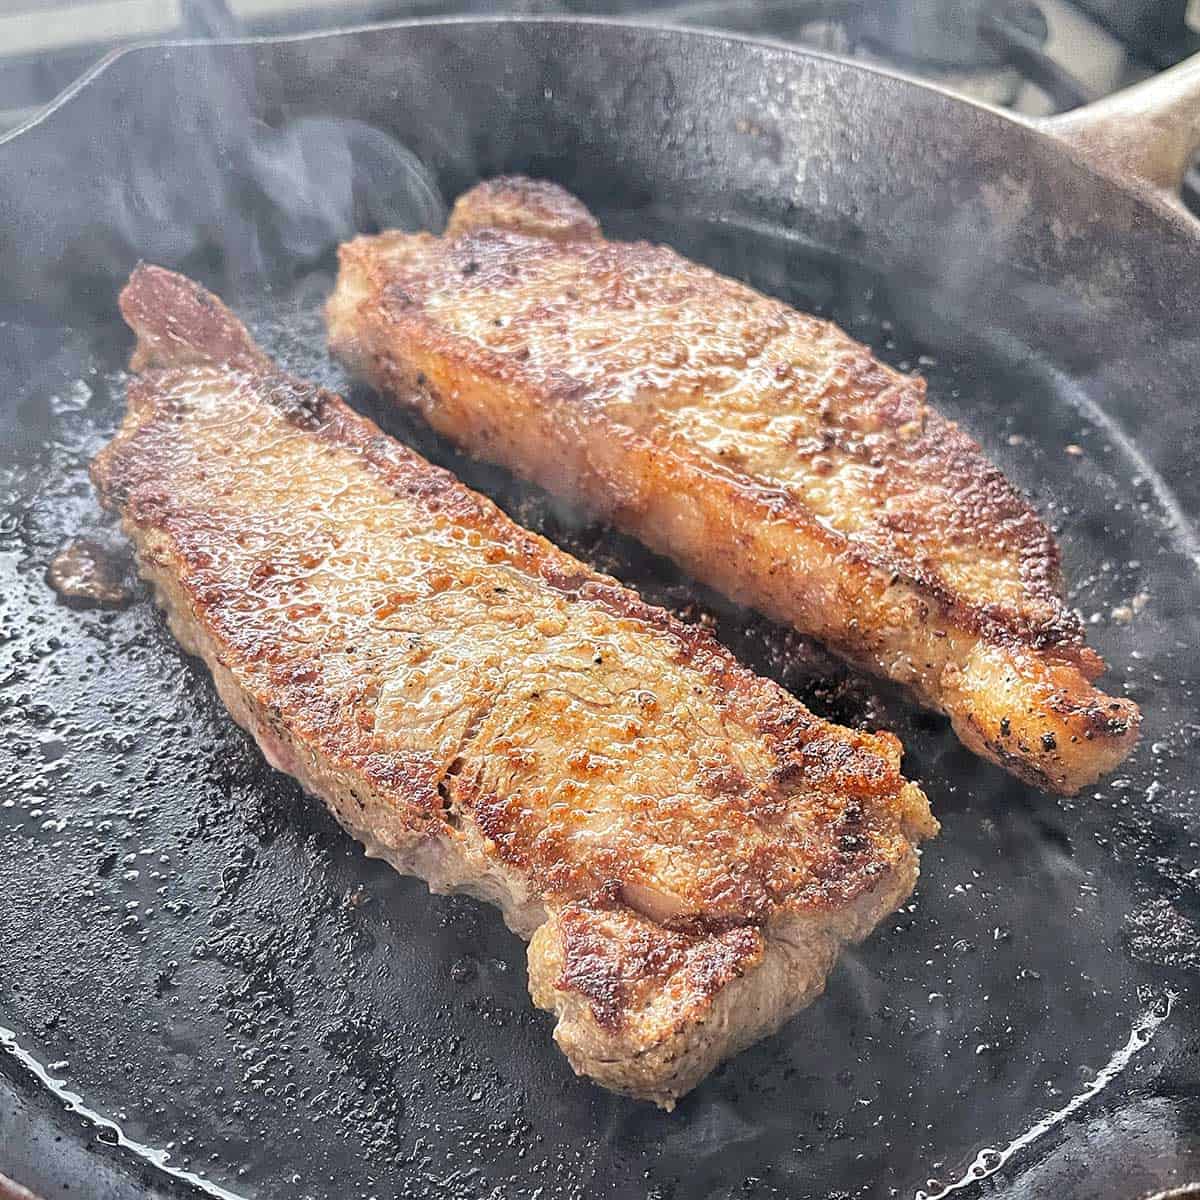 Steak frying in a pan